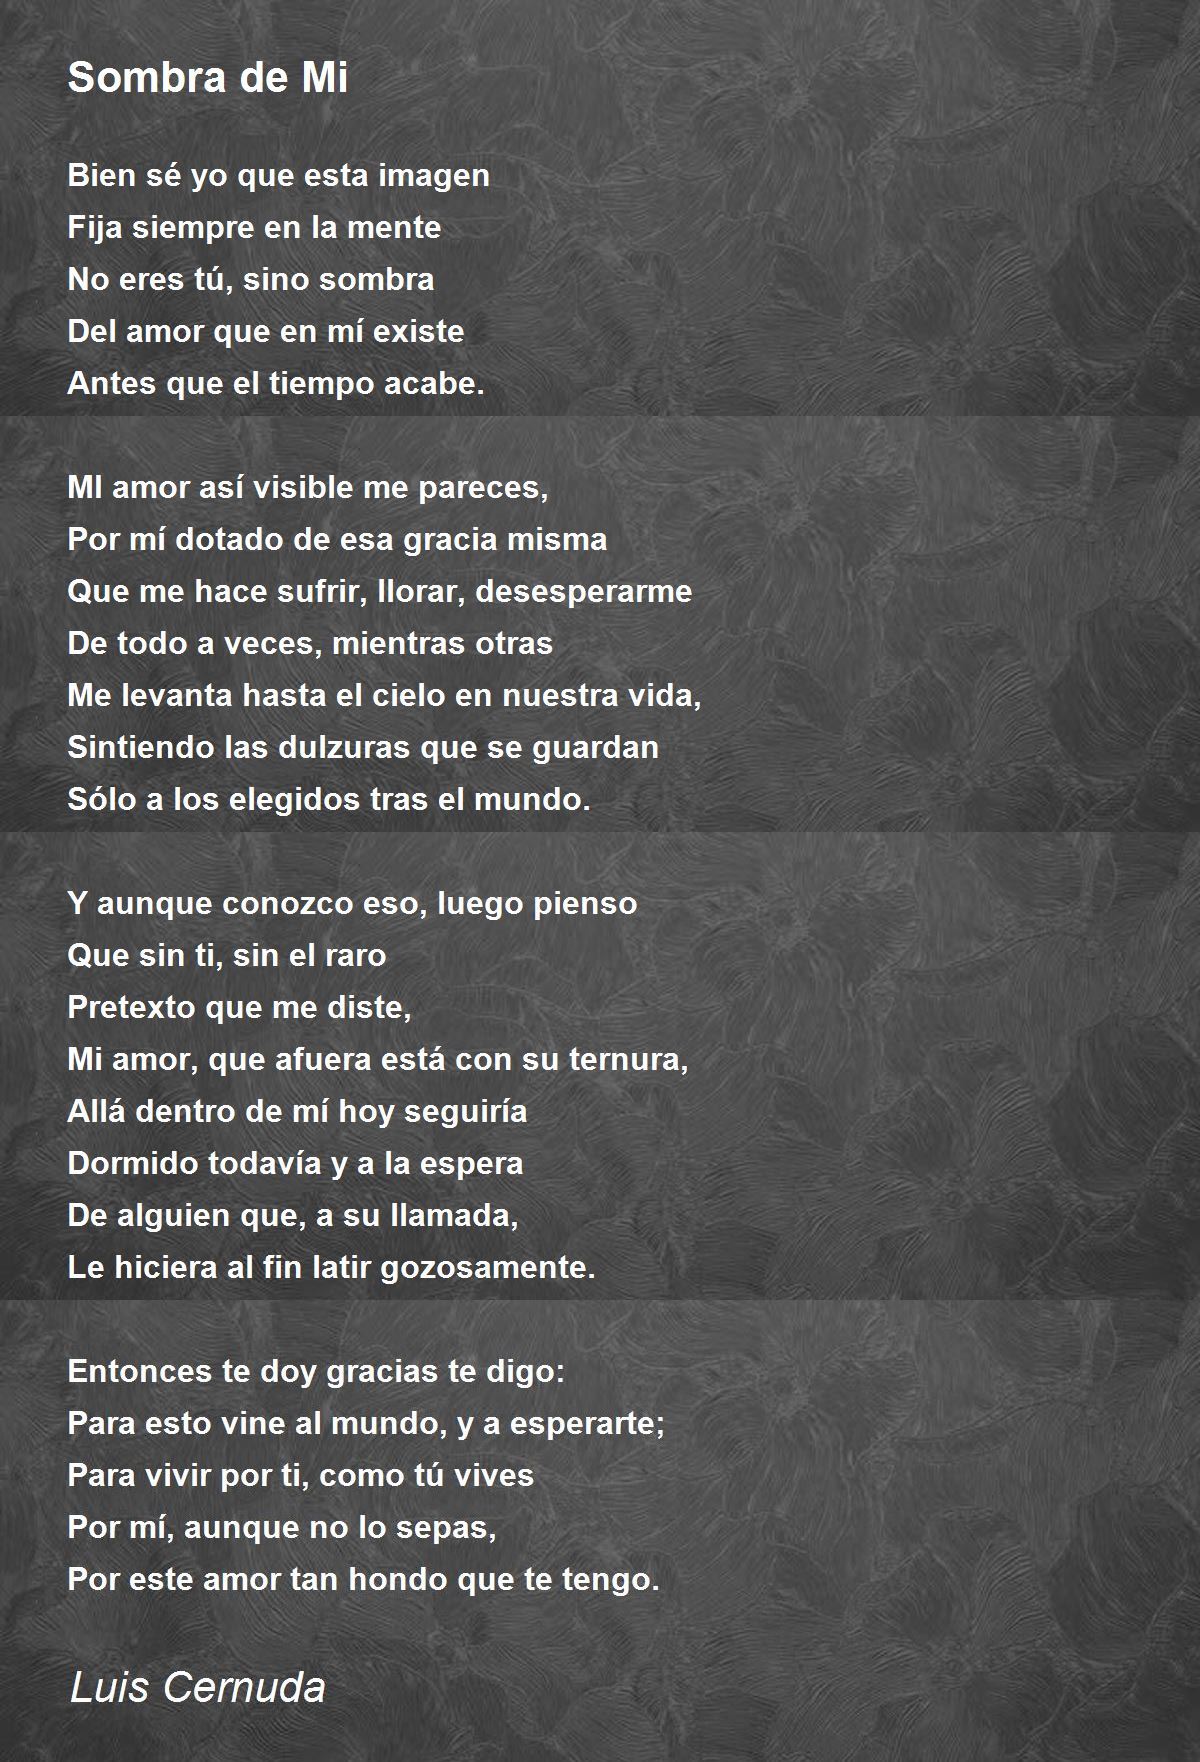 Sombra de Mi - Sombra de Mi Poem by Luis Cernuda